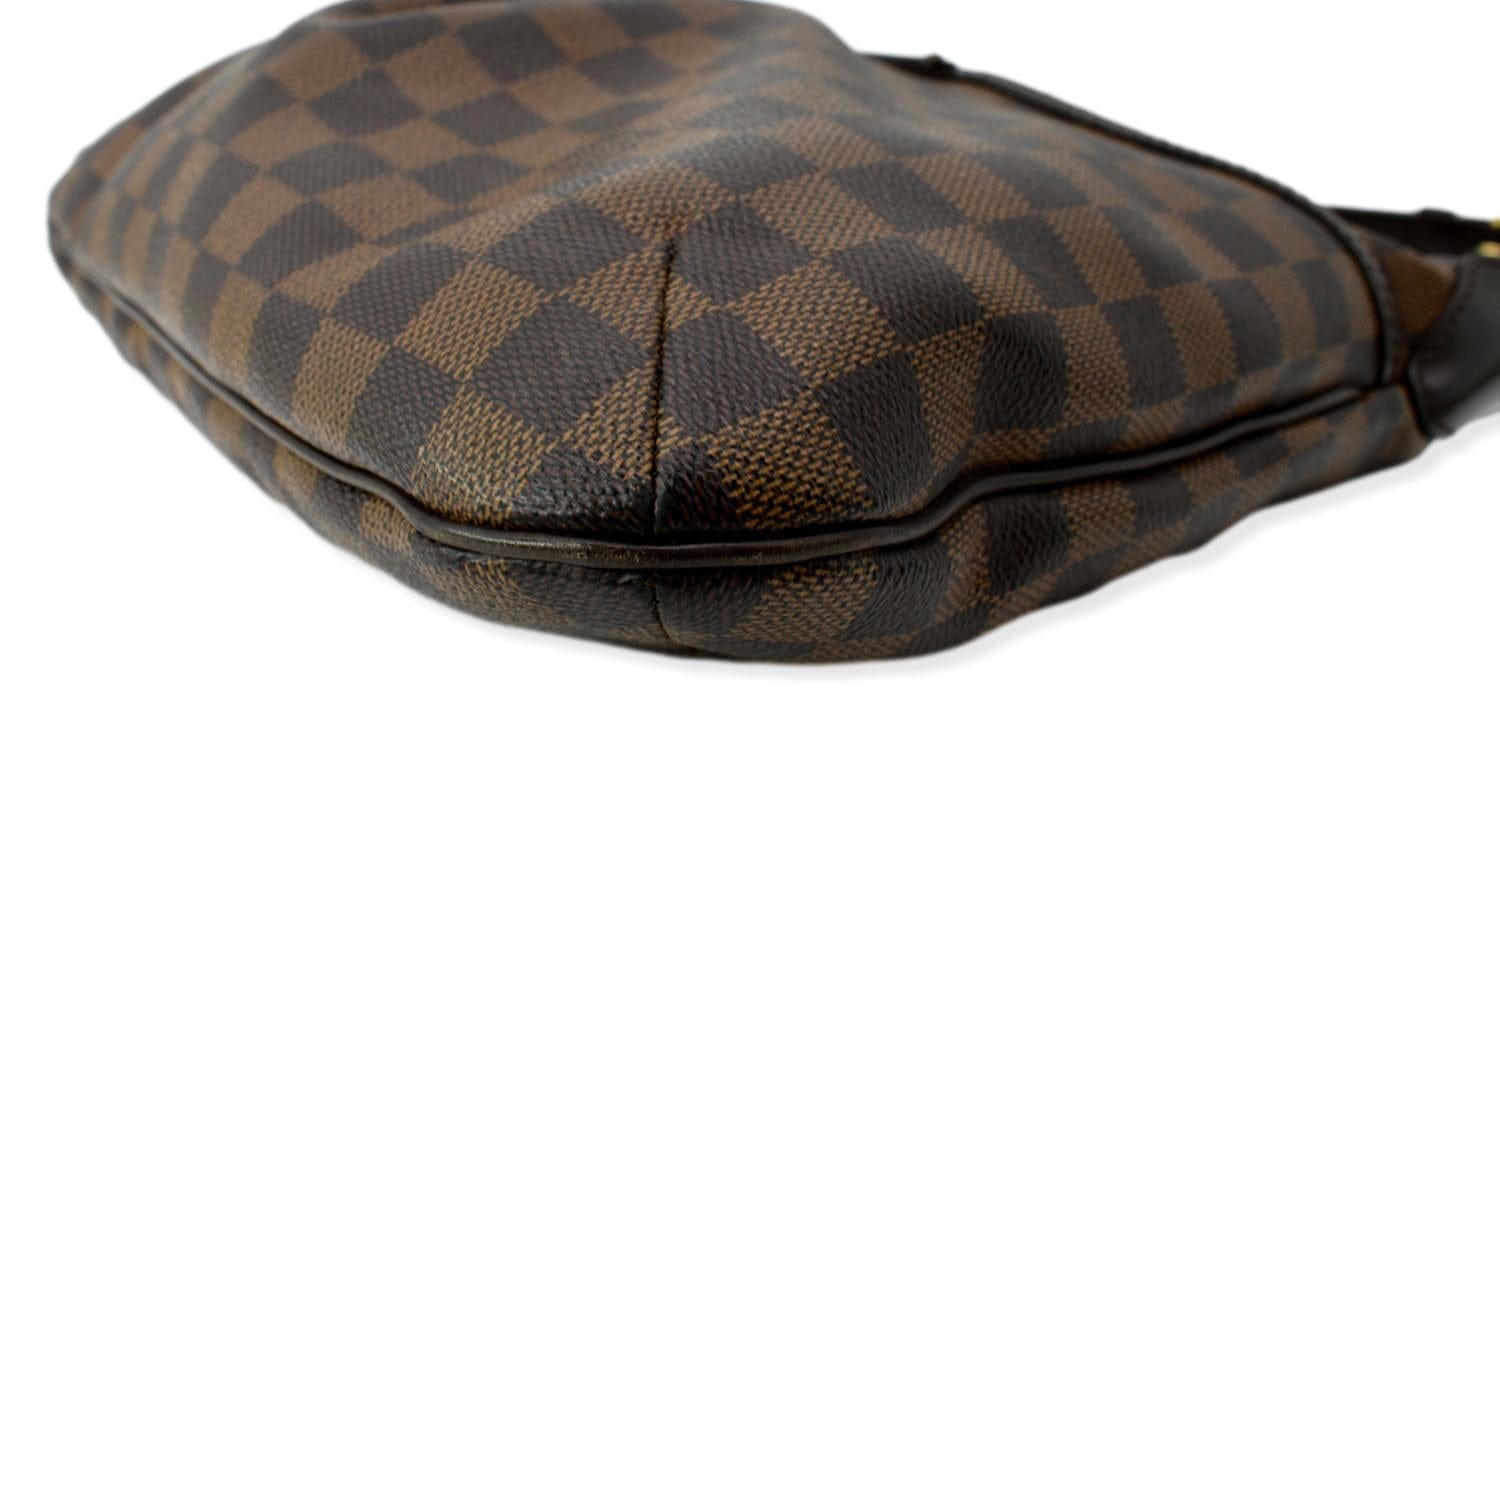 Authentic Louis Vuitton Bloomsbury PM crossbody shoulder bag. VGC